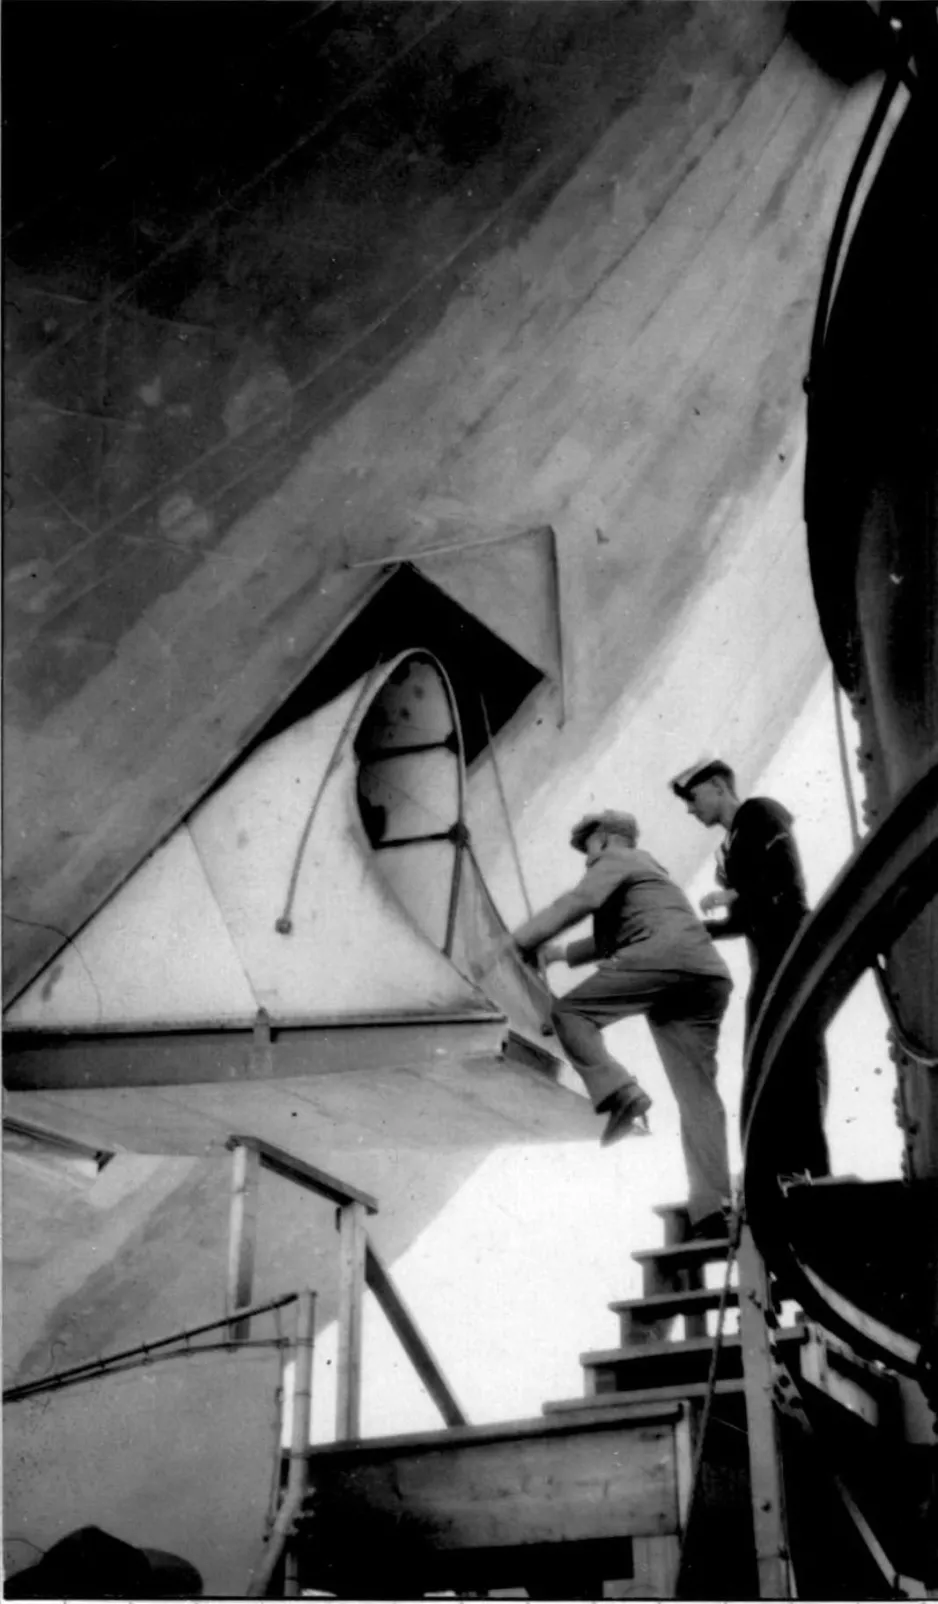 Une photographie noir et blanc montre un homme juché sur un escalier, en train de se hisser à bord du R-100. La hauteur à franchir est d’environ 1 m. Un autre homme se tient derrière lui.